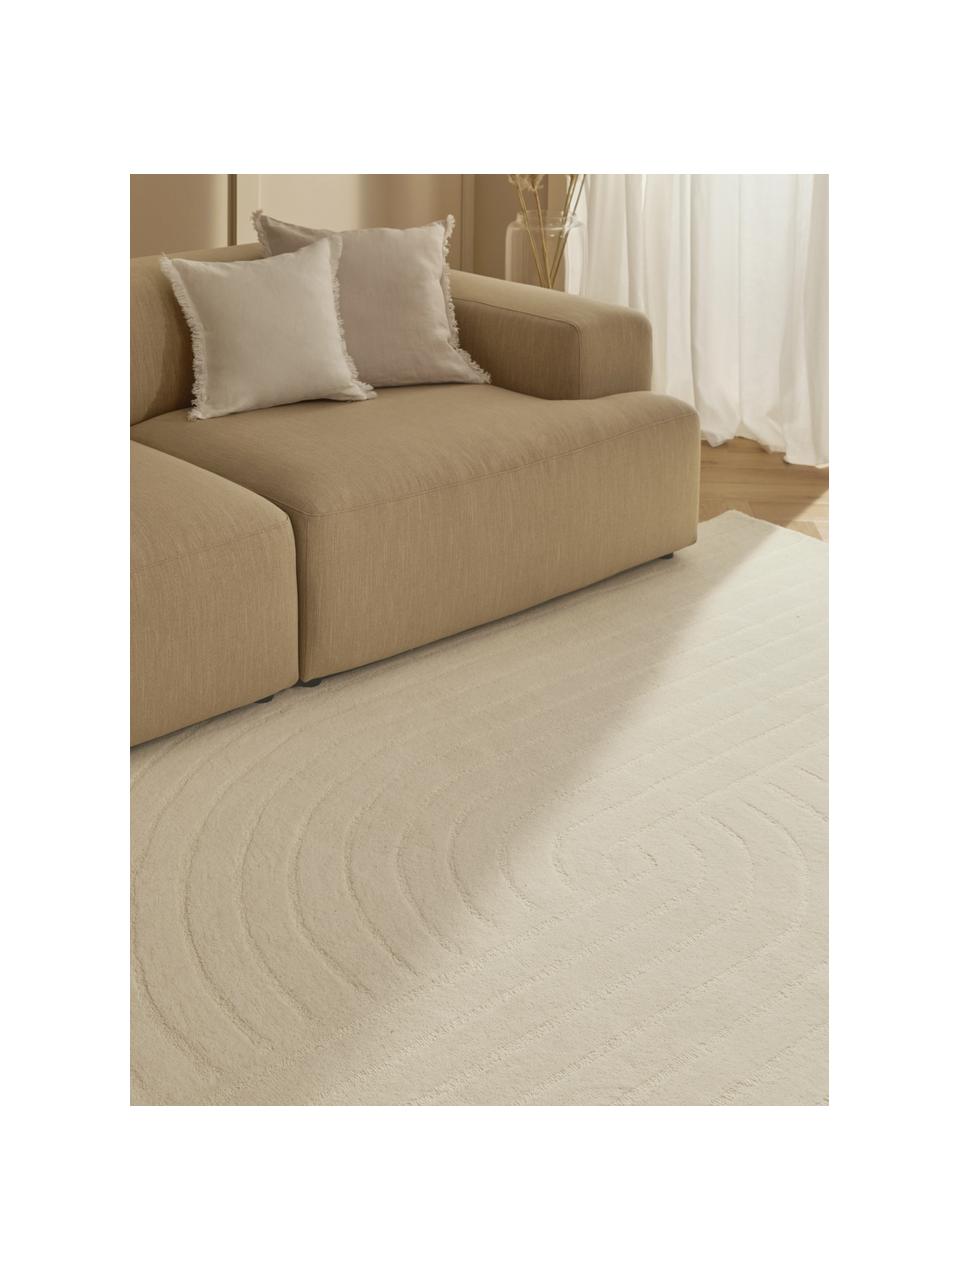 Tapis laine blanc crème tufté main Mason, Beige, larg. 120 x long. 180 cm (taille S)